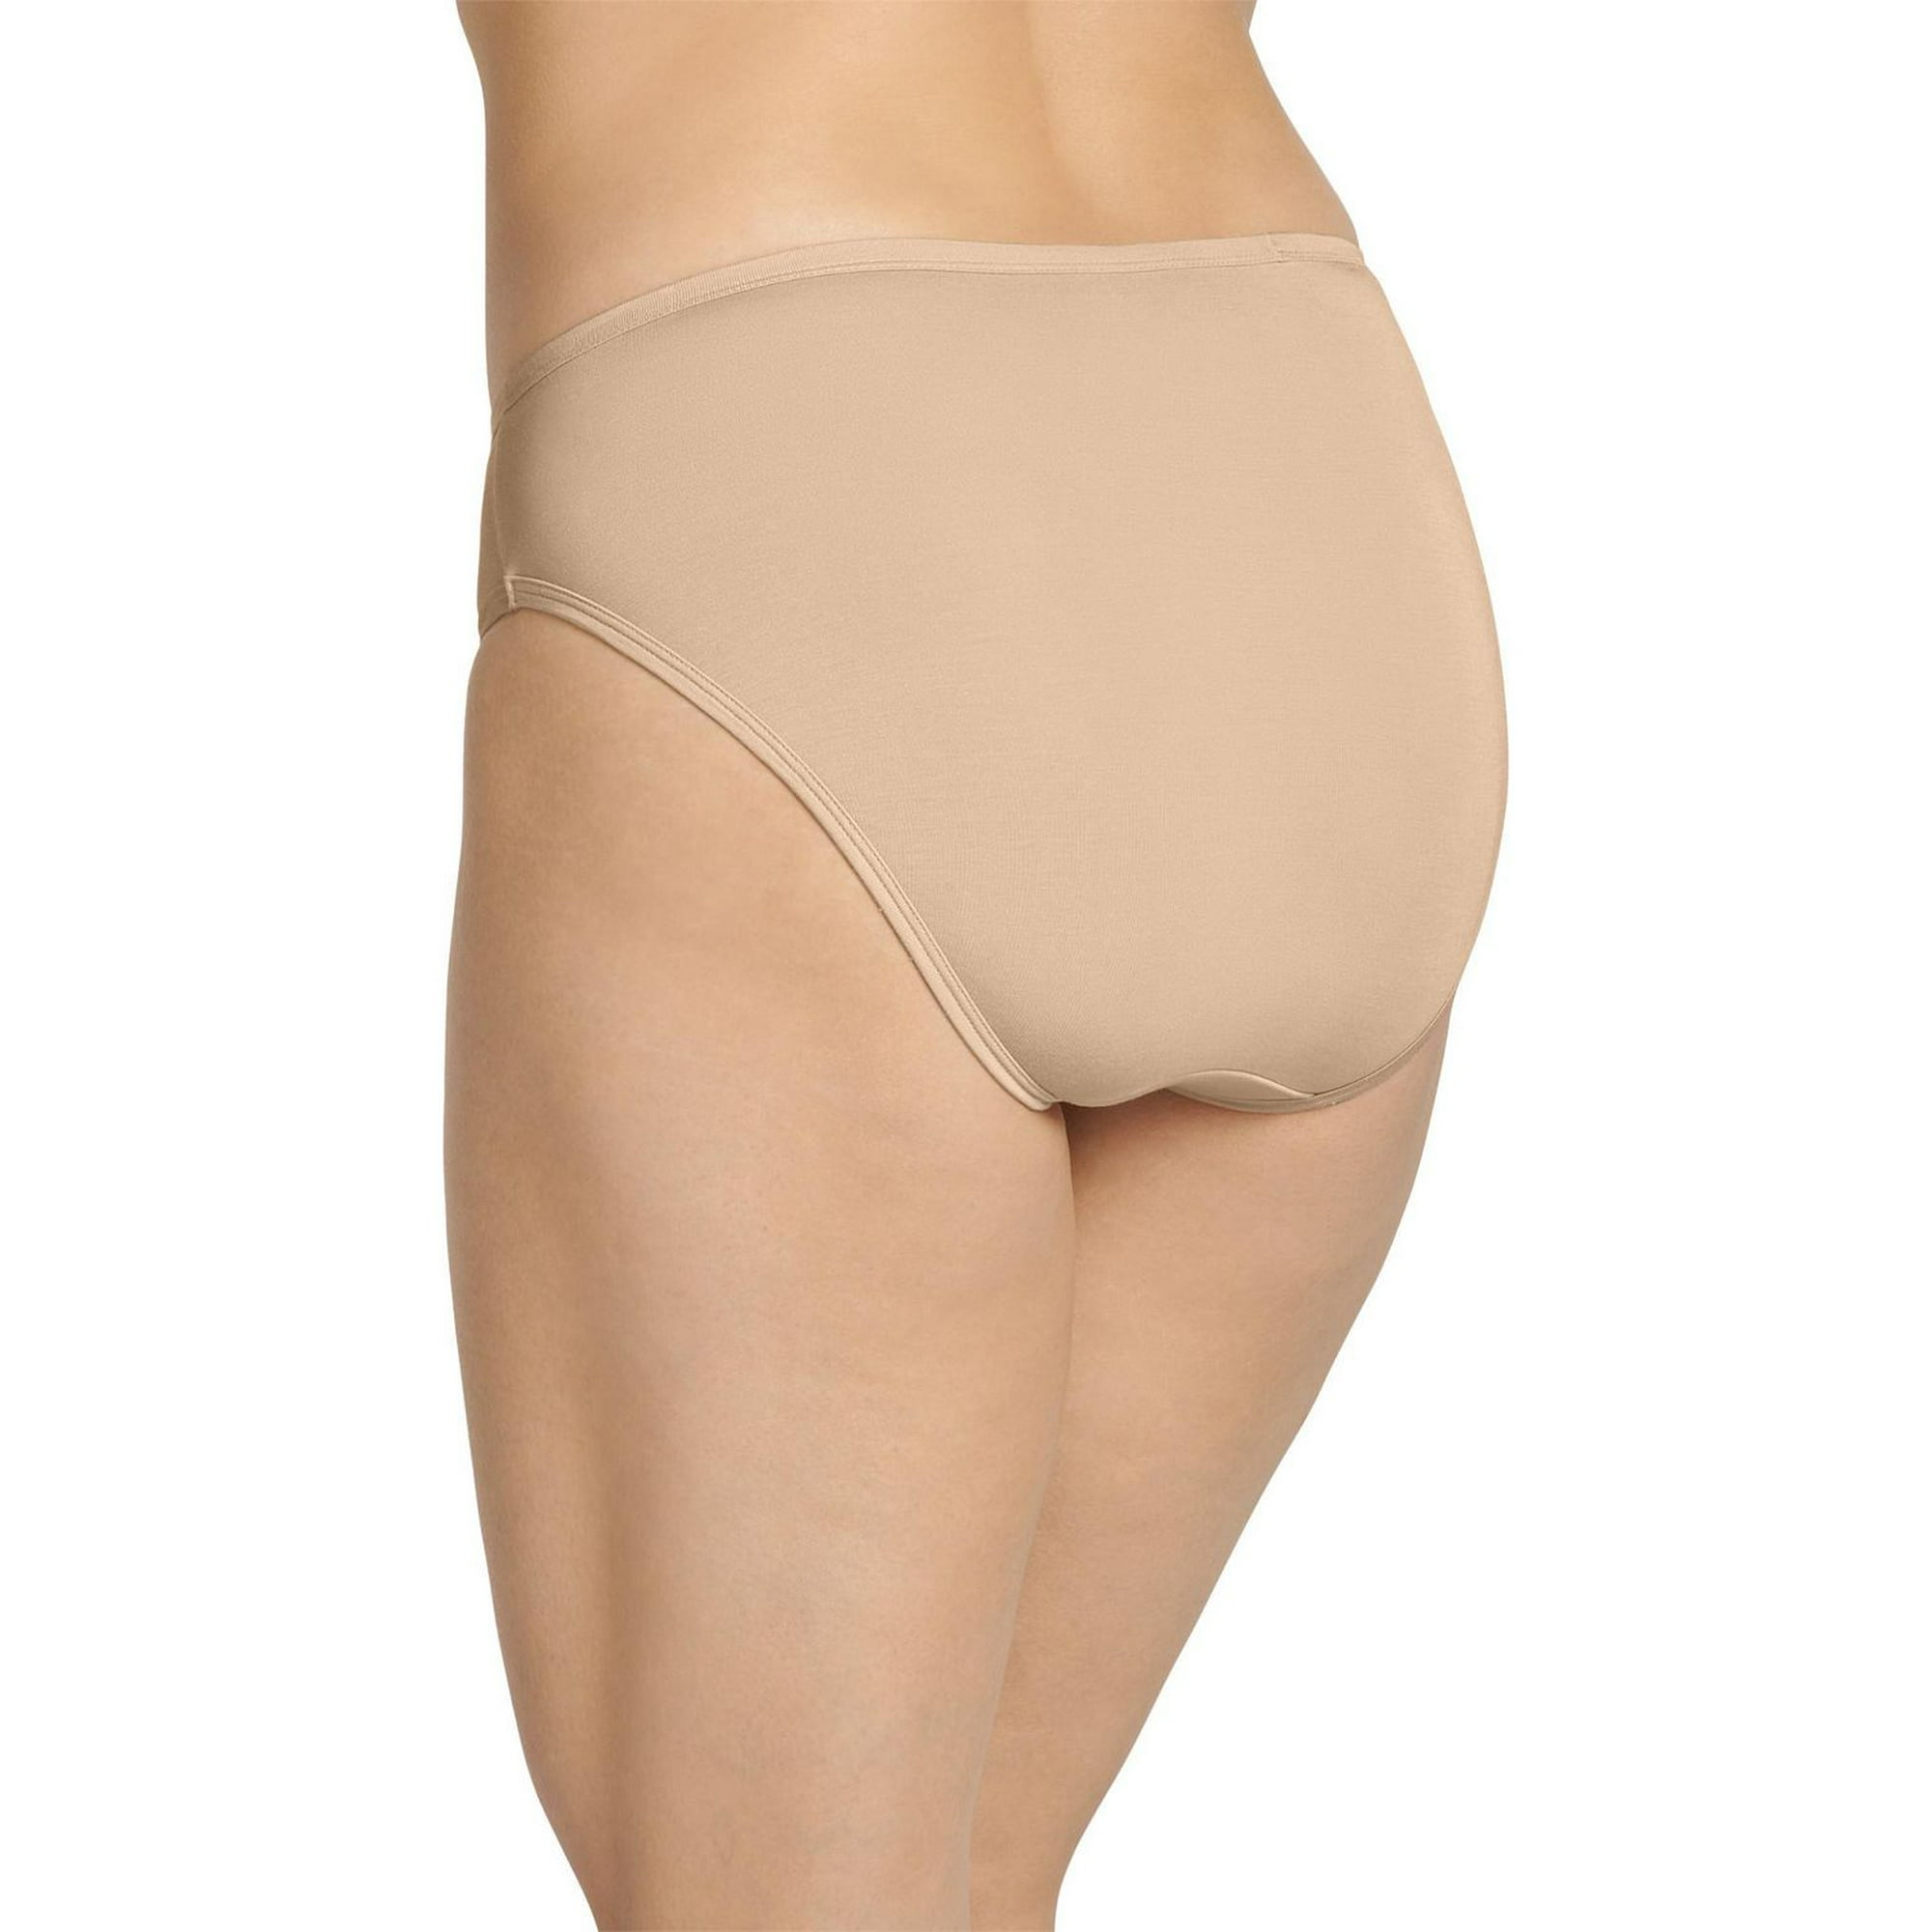 Jockey - Jockey Basic women's underwear is Here! Available online